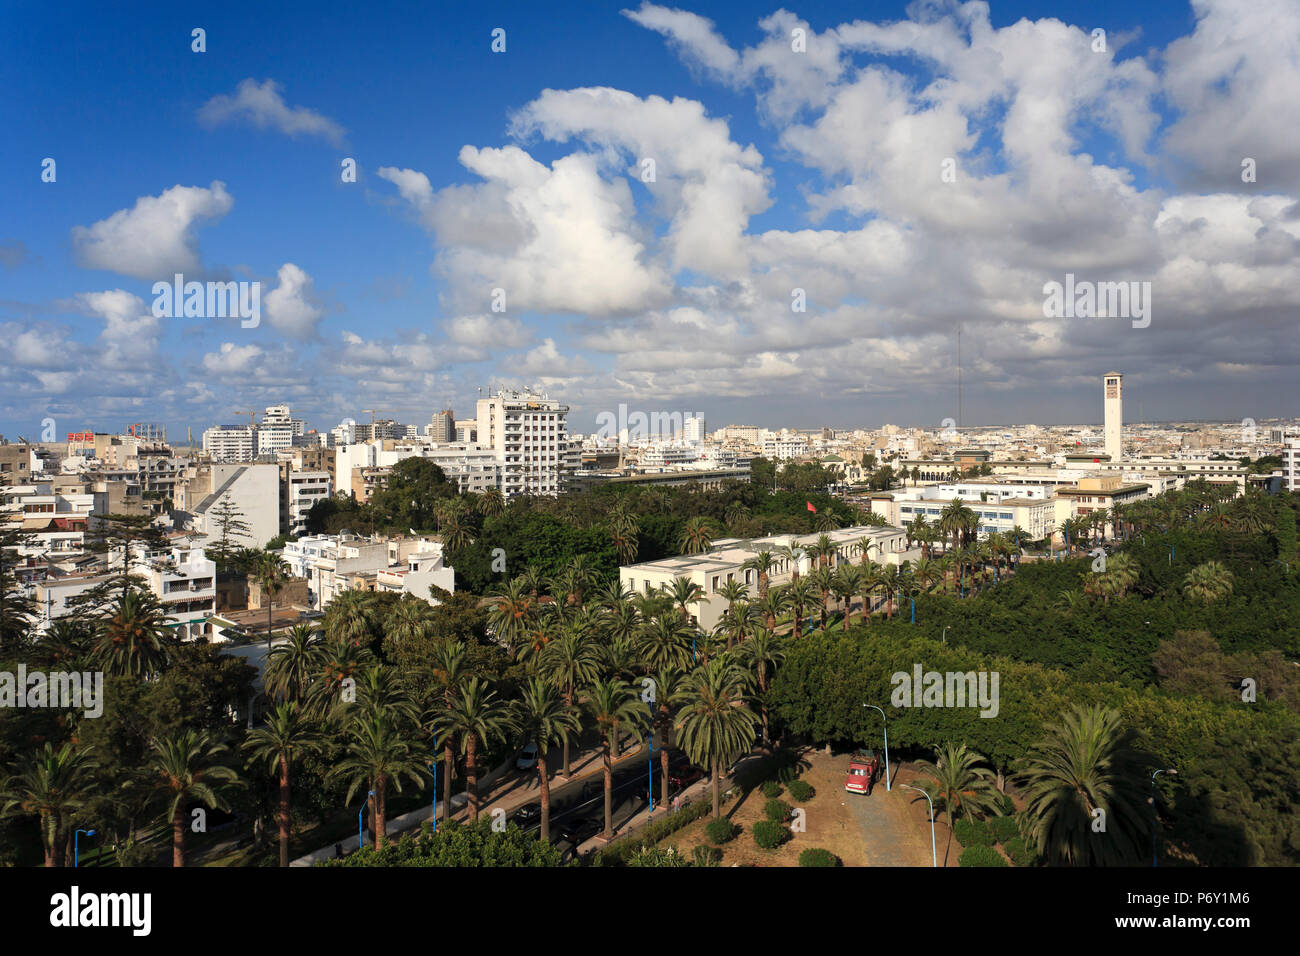 Morocco, Casablanca Stock Photo